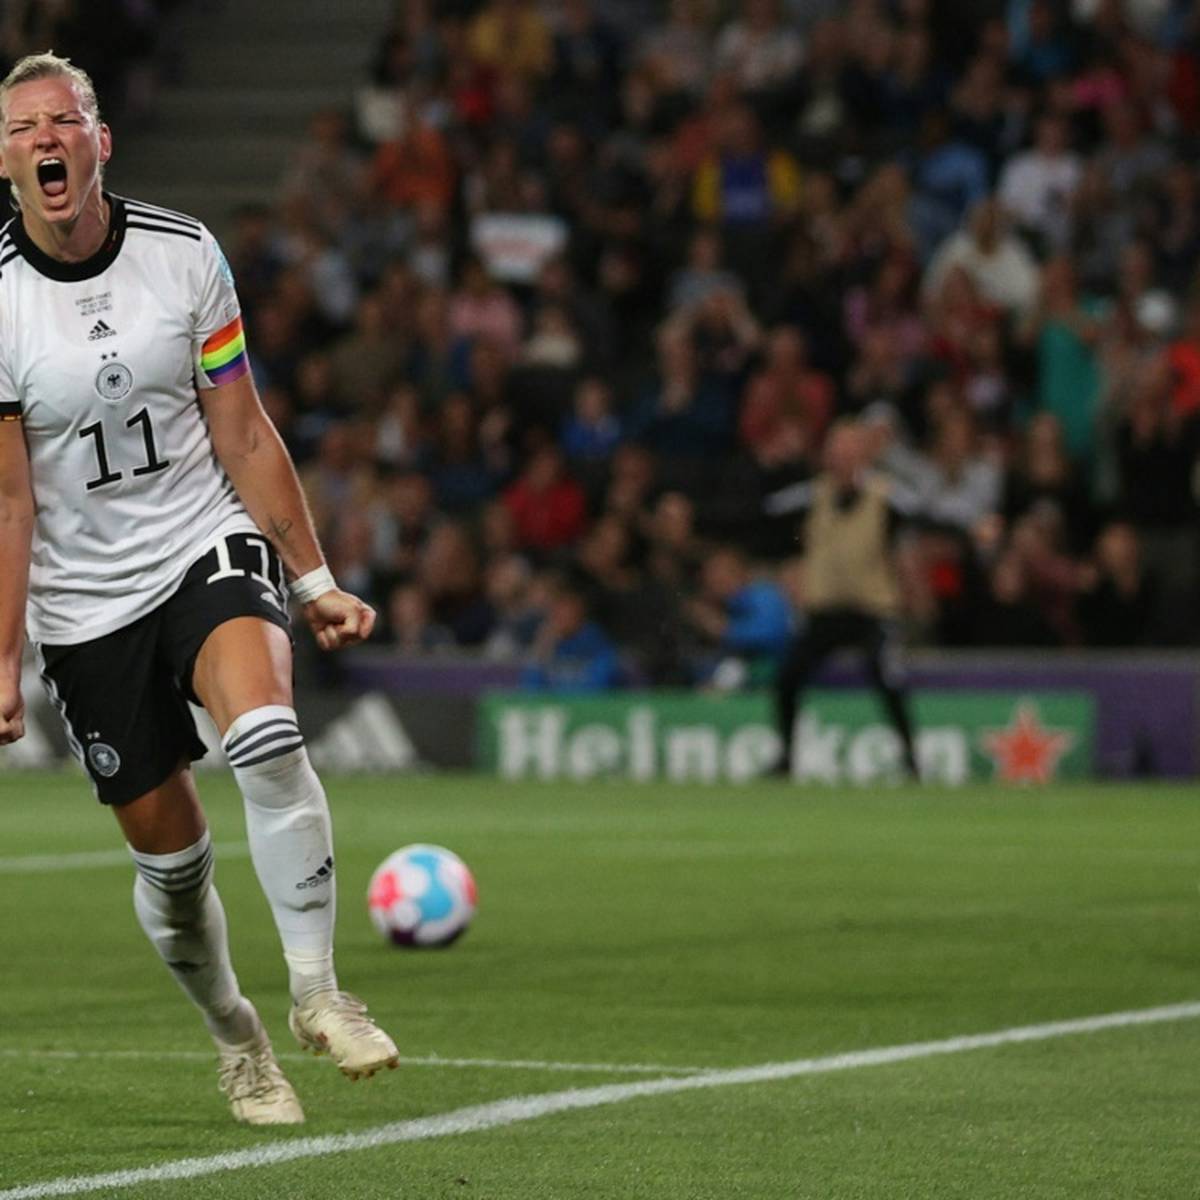 Die Fußball-Nationalmannschaft der Frauen bestreitet gegen Frankreich den ersten Heim-Auftritt nach der EM erfolgreich. Erneut wird Alexandra Popp zur Ruckzuck-Heldin